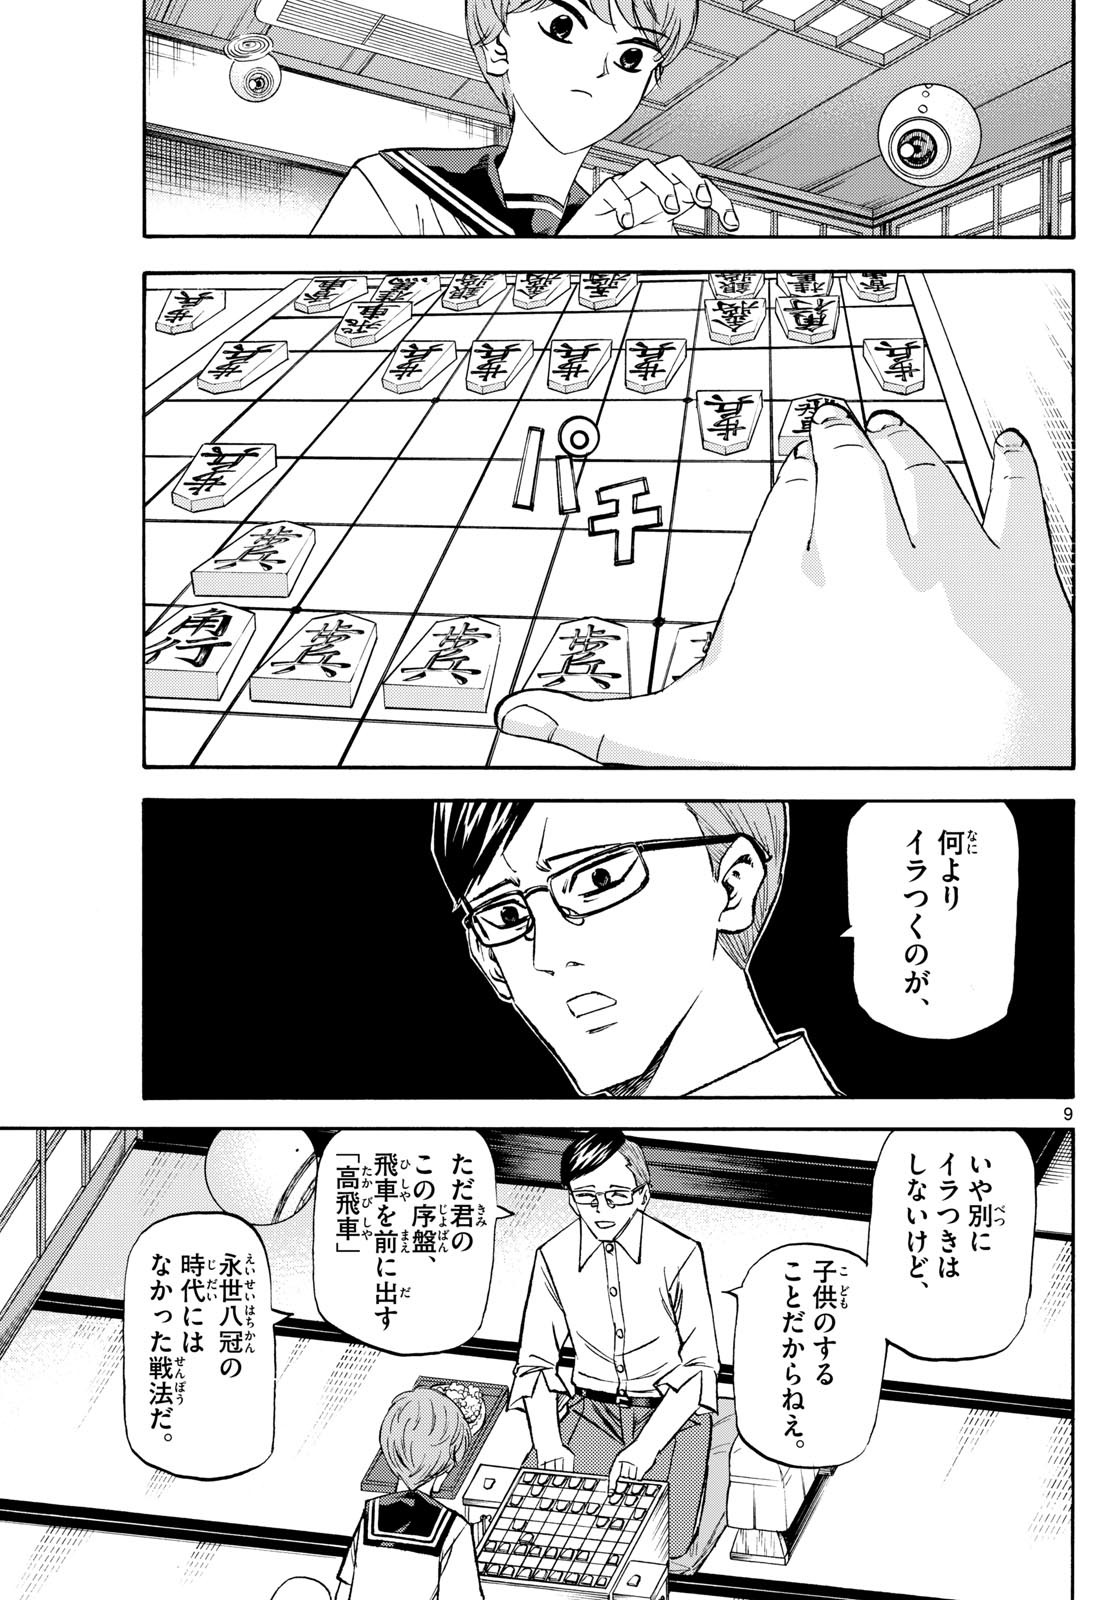 Ryu-to-Ichigo - Chapter 196 - Page 9